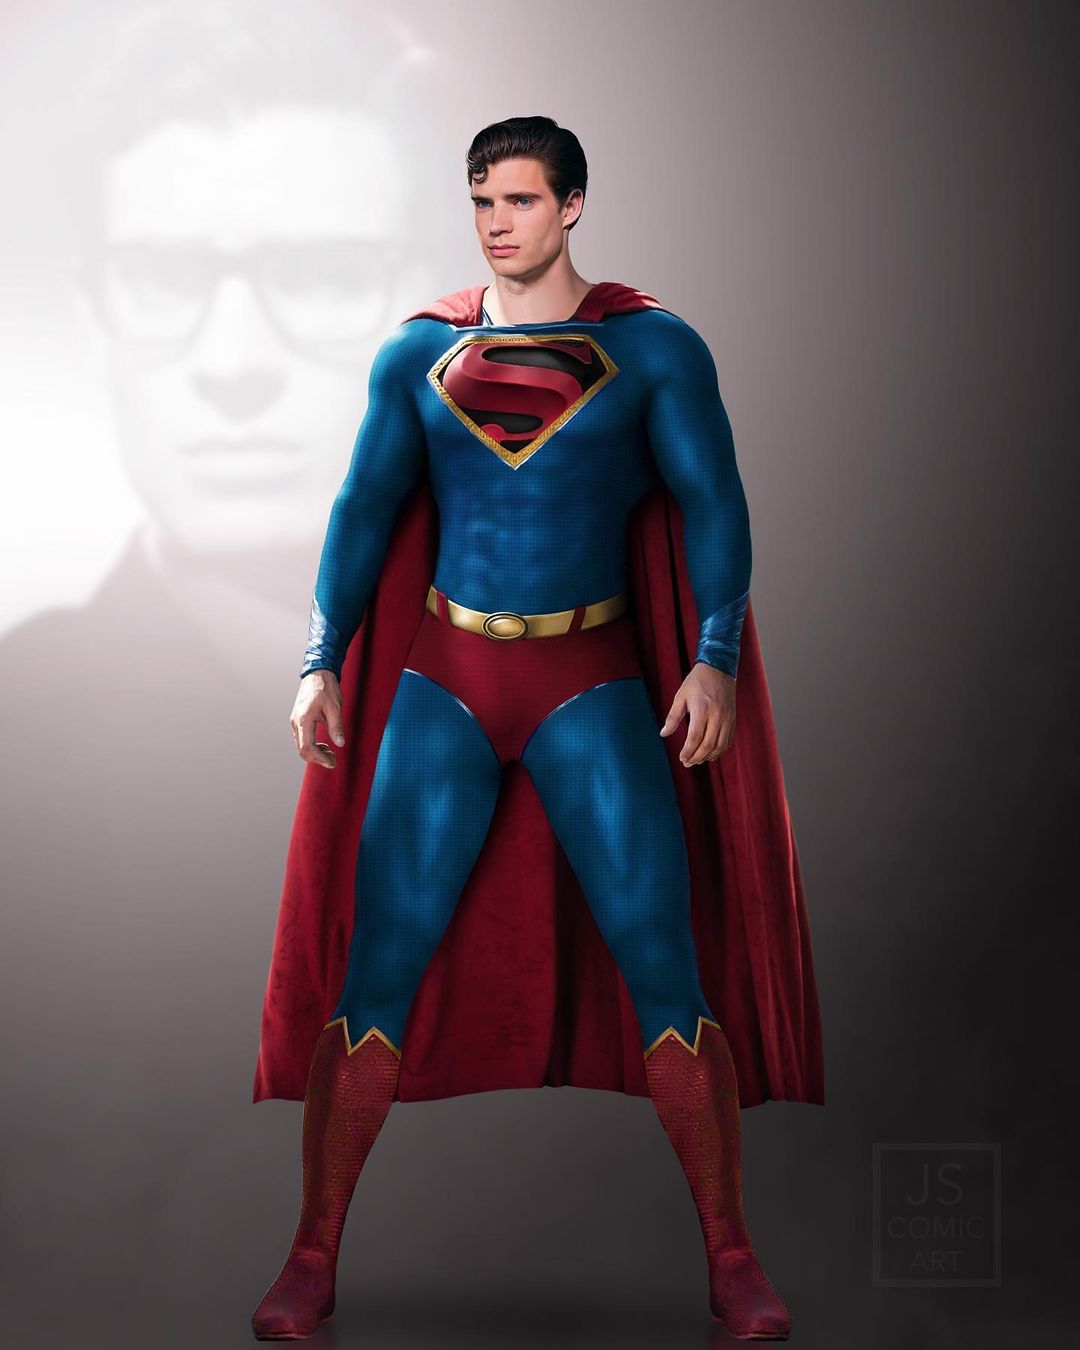 Cinemas brasileiros exibirão versão clássica de Superman, de